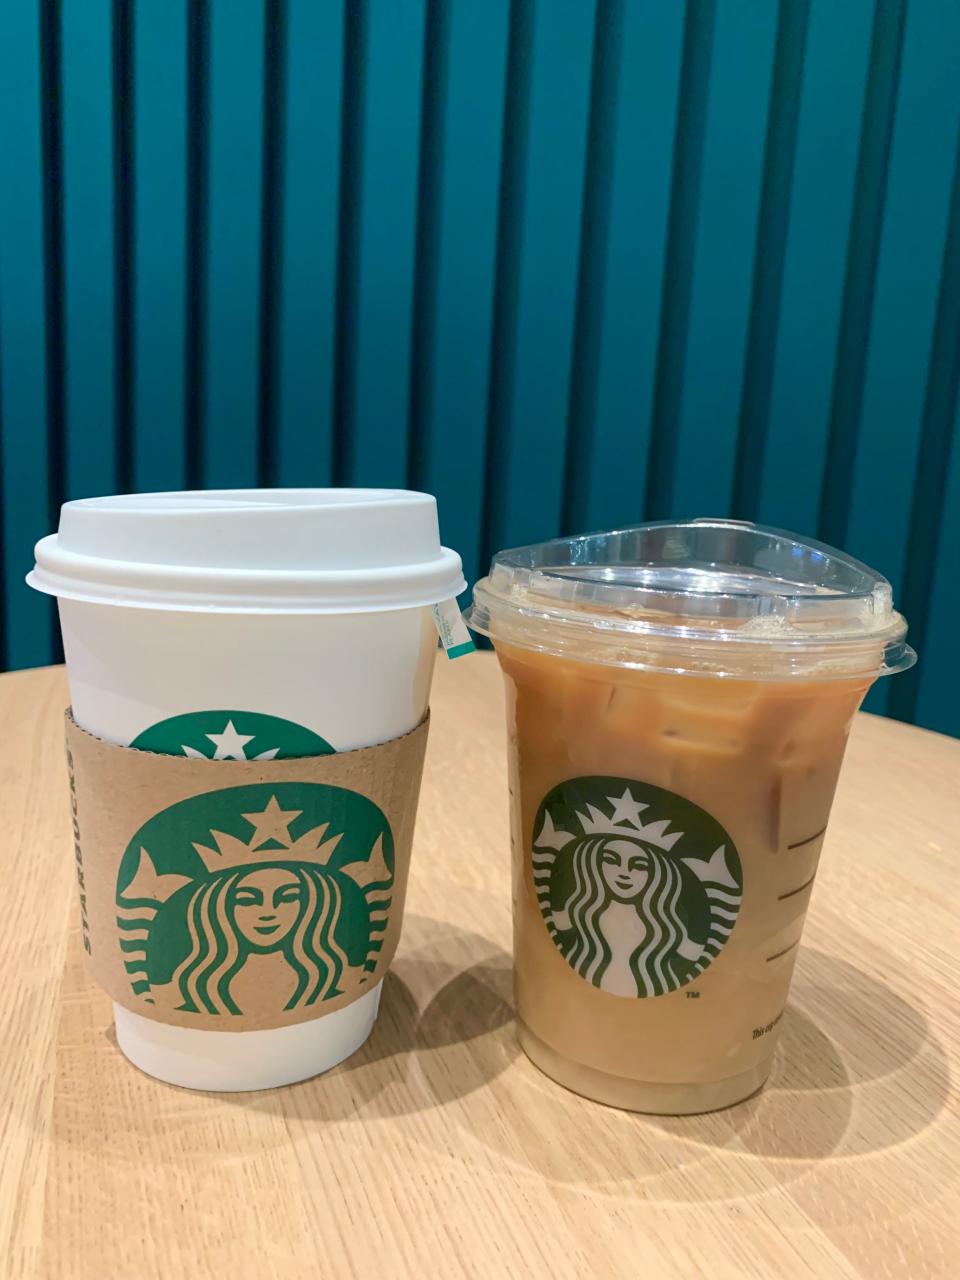 The Starbucks jasmine pearls tea, alongside the cold brew latte